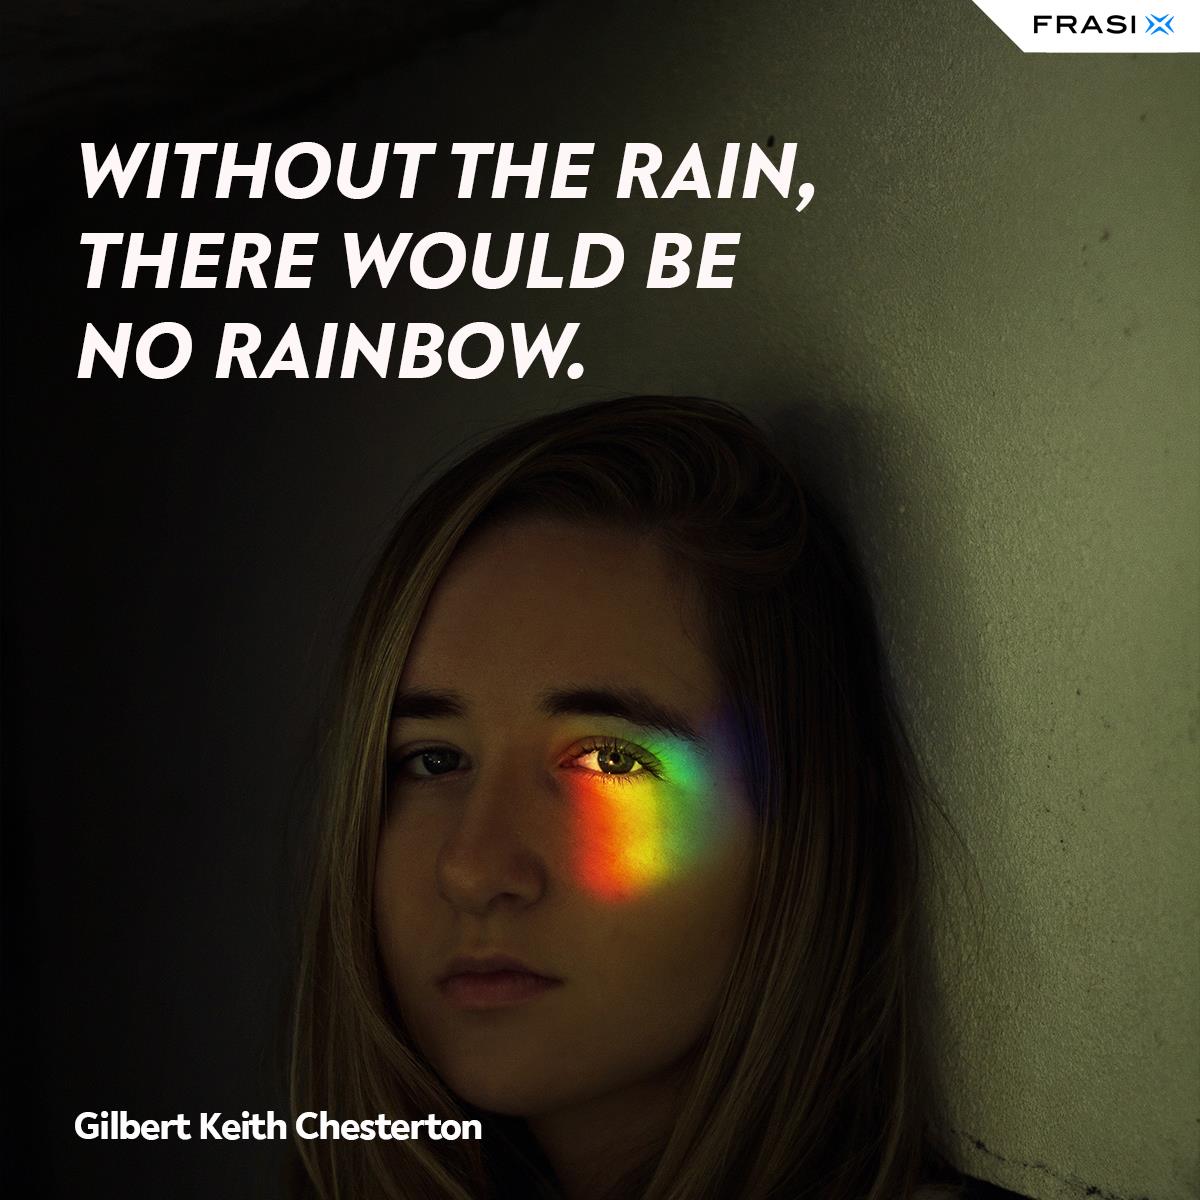 Immagine ragazza e arcobaleno per Stati Whatsapp in inglese